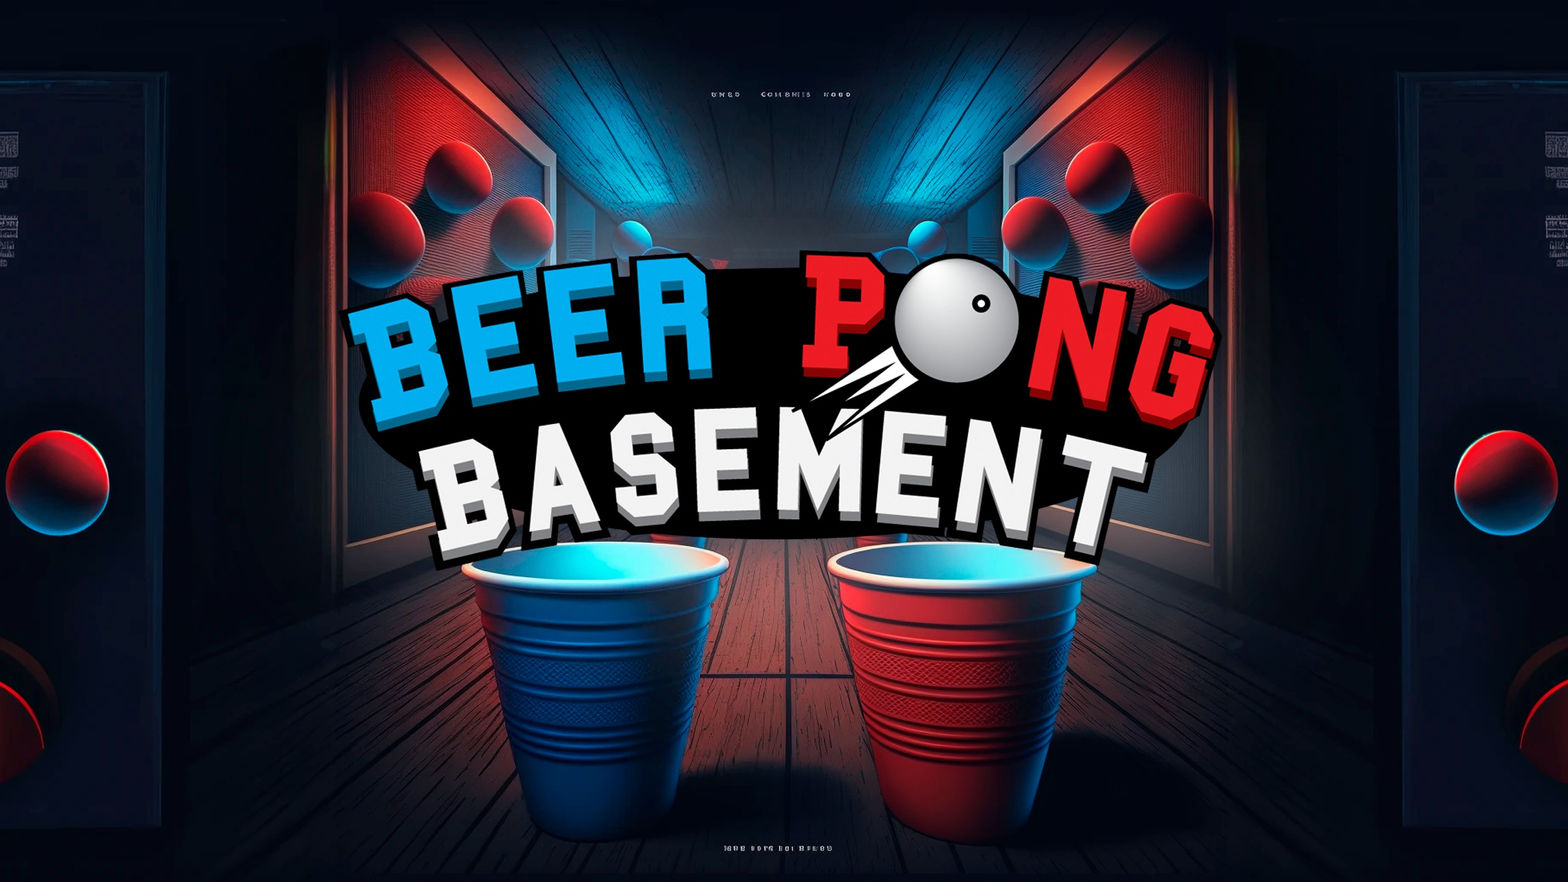 Beer Pong Basement